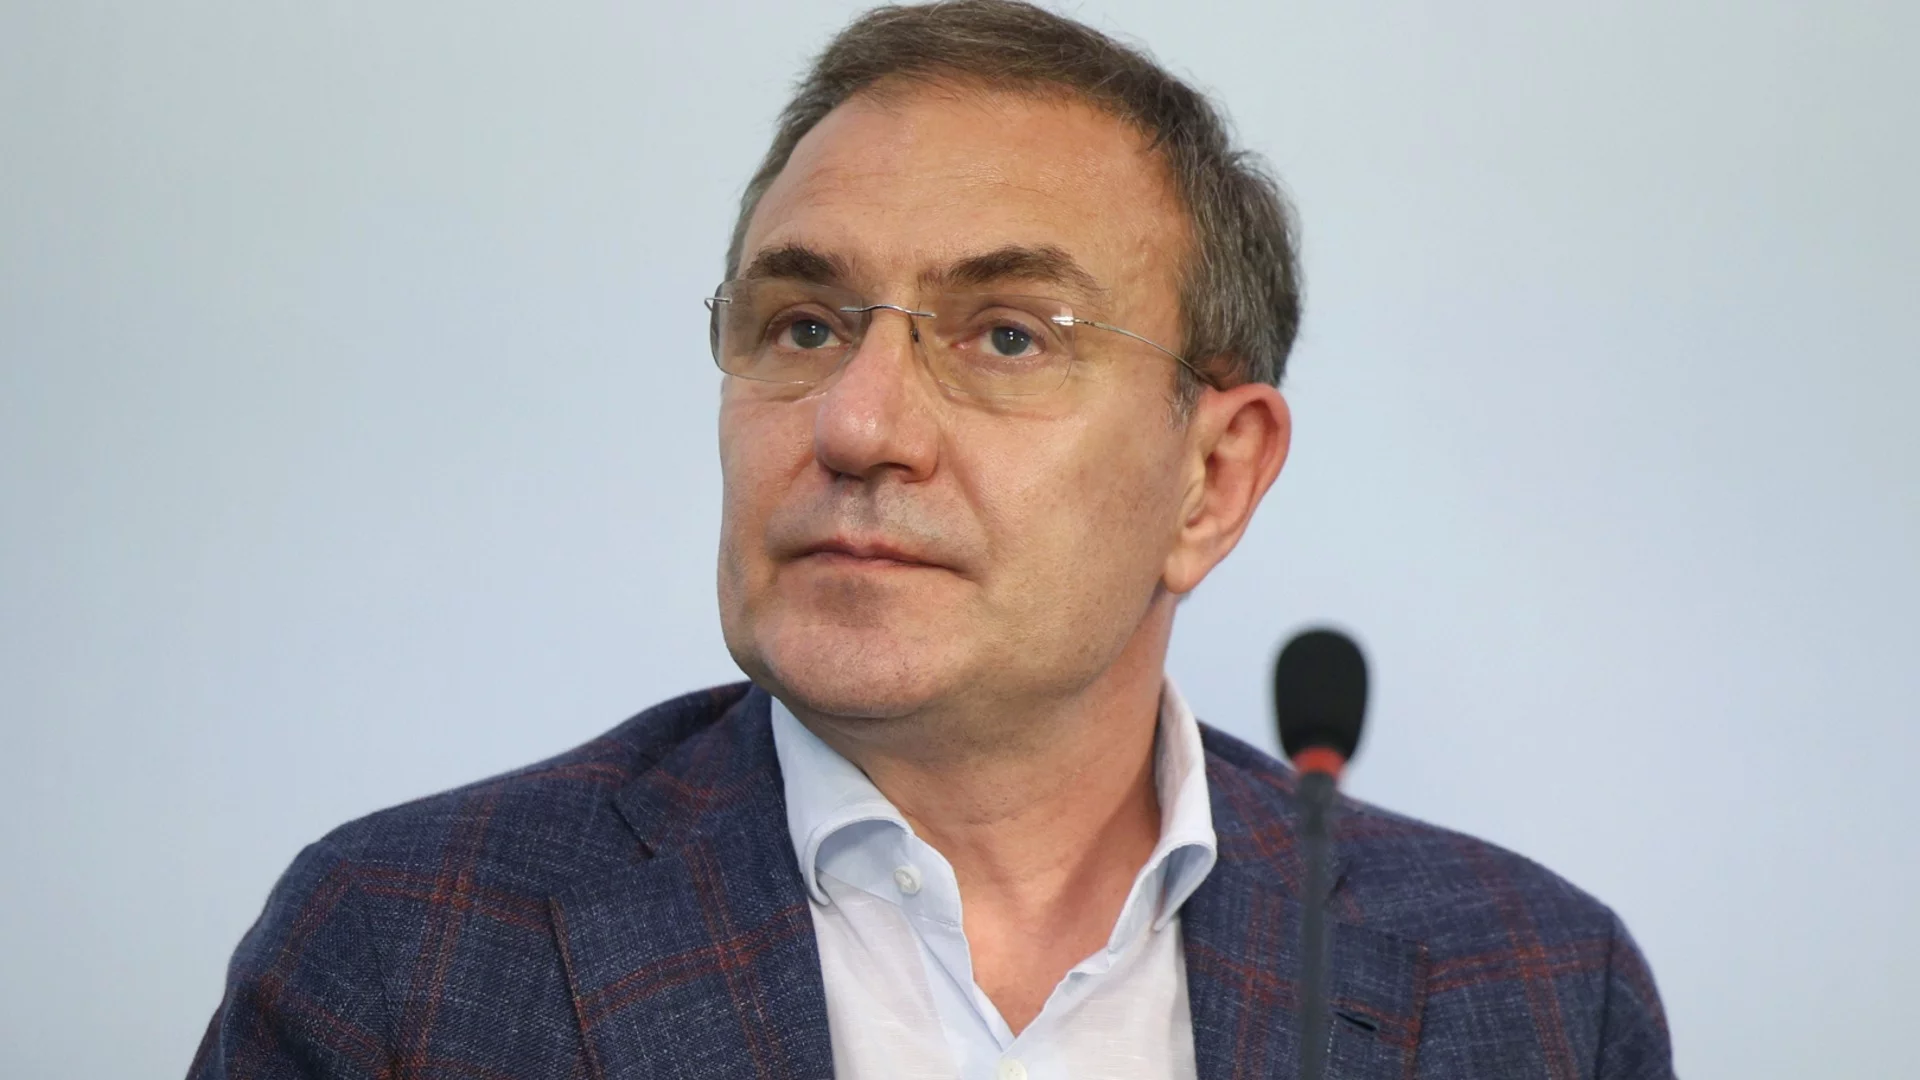 Борислав Гуцанов каза при какви условия ще се кандидатира за лидер на БСП